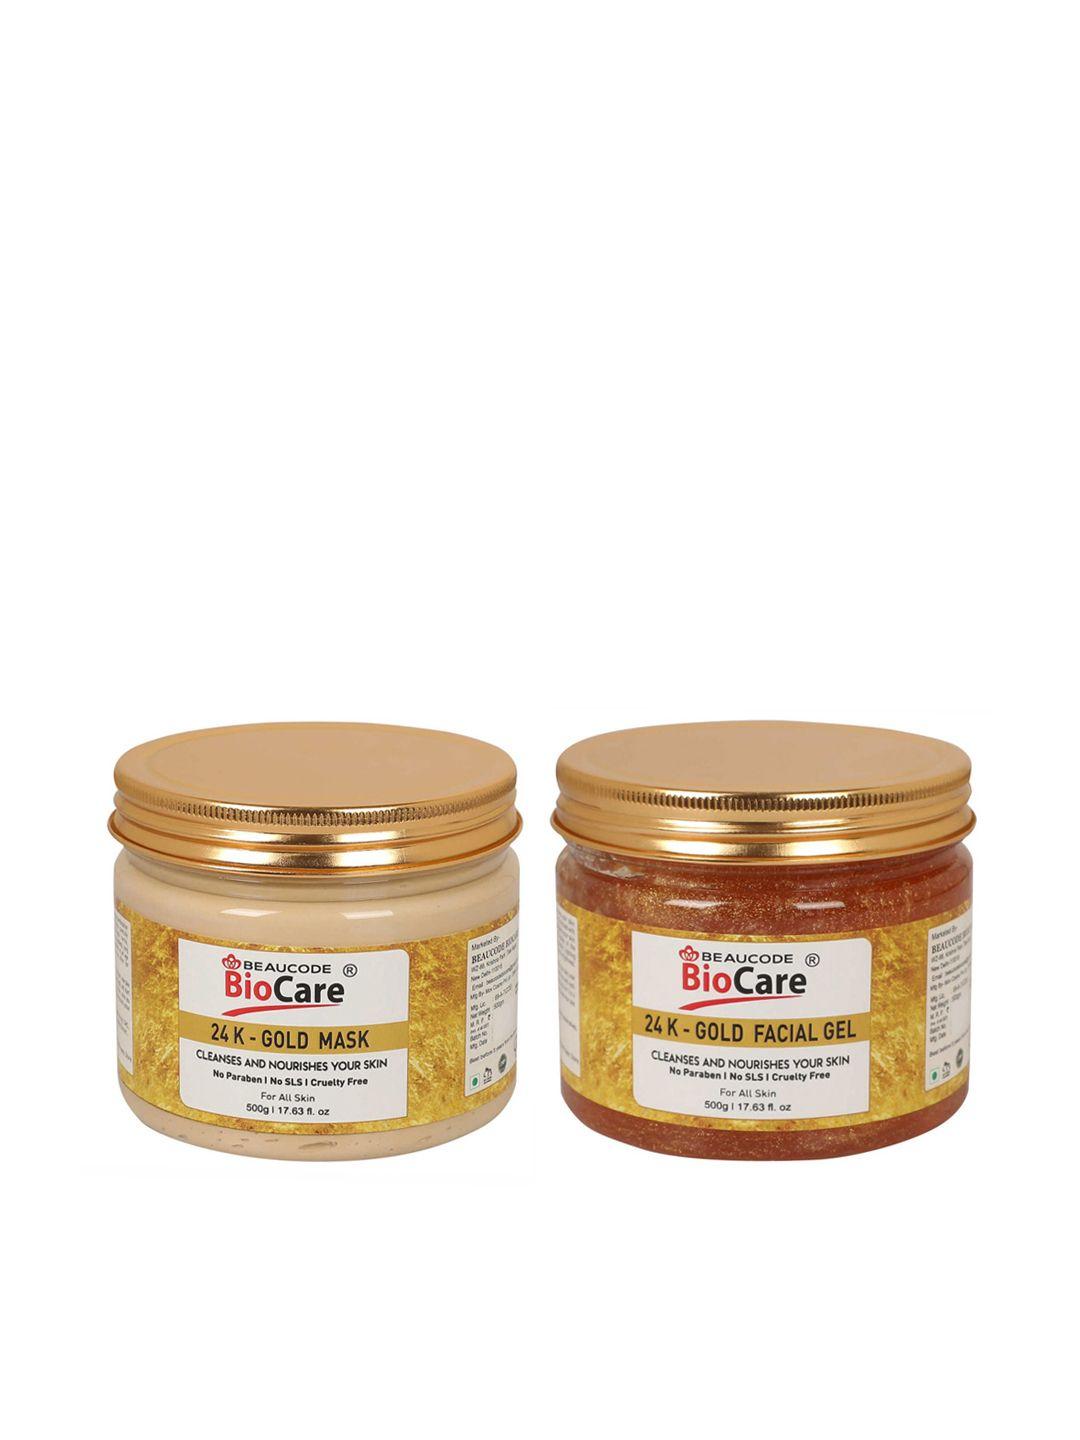 beaucode-biocare-gold-set-of-2-24k-gold-mask-&-facial-gel---500-g-each